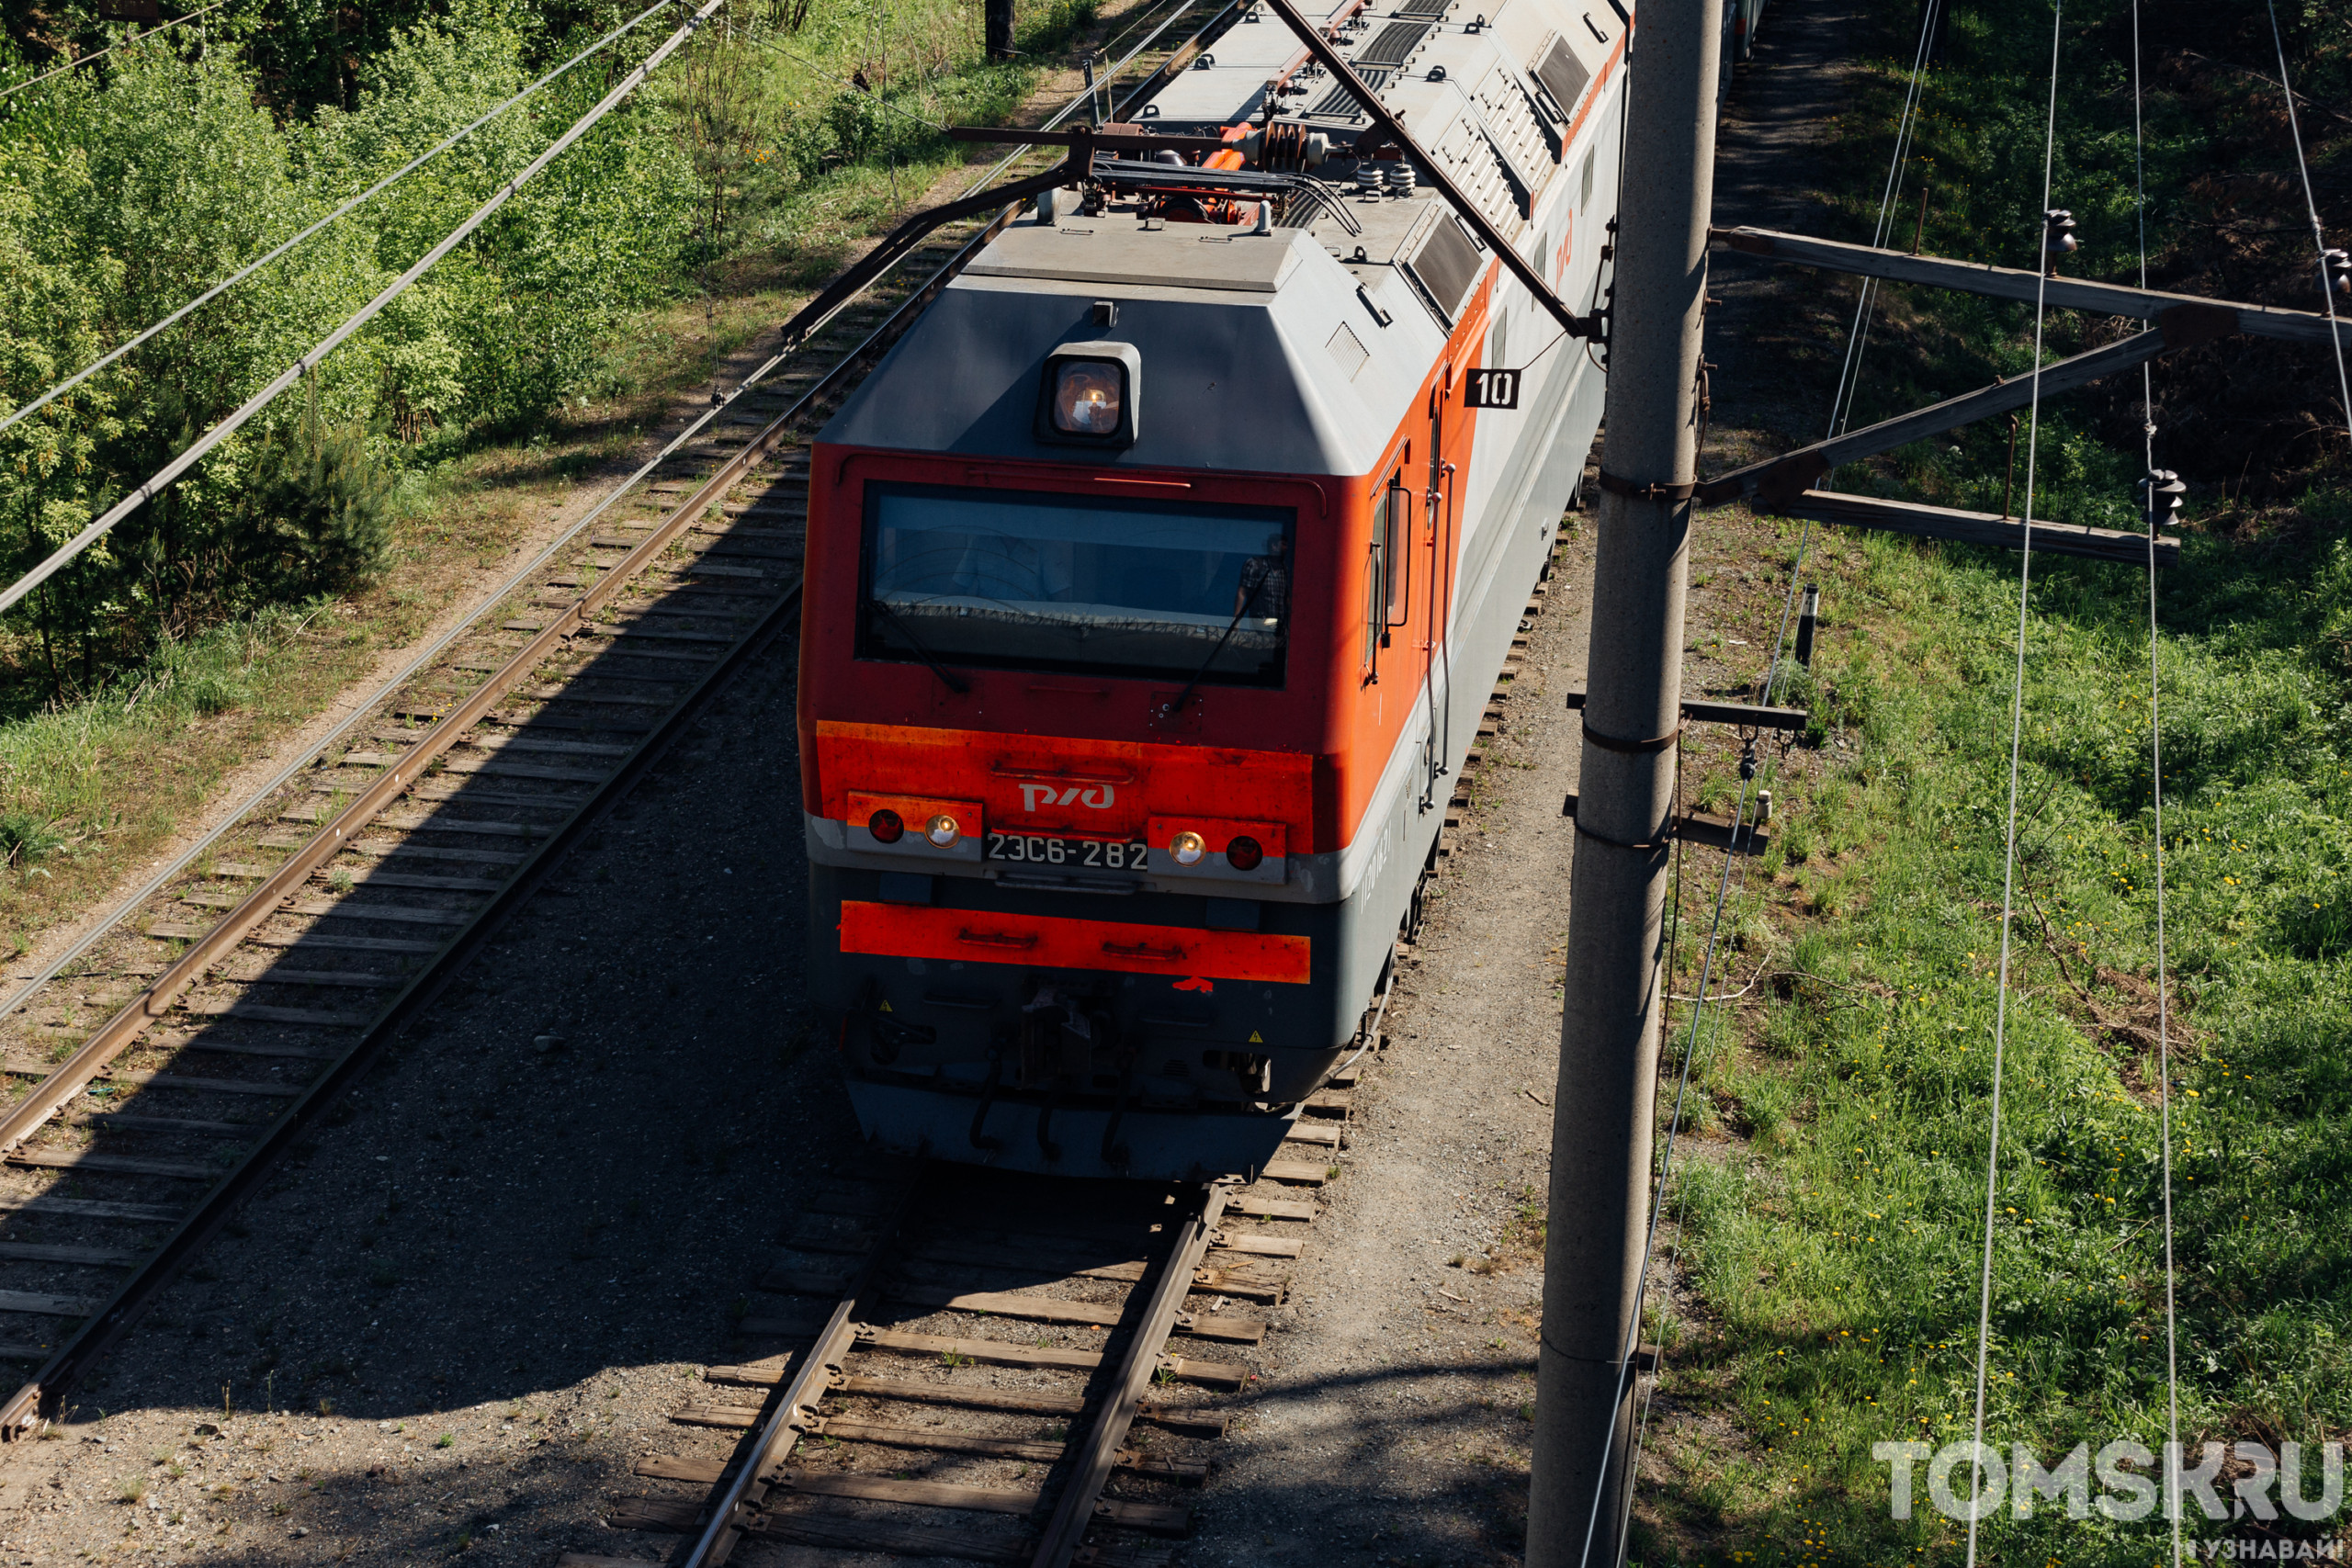 Движение поезда томск. Станция Томск-грузовой. Пассажирский поезд. Железная дорога. Скорый поезд.